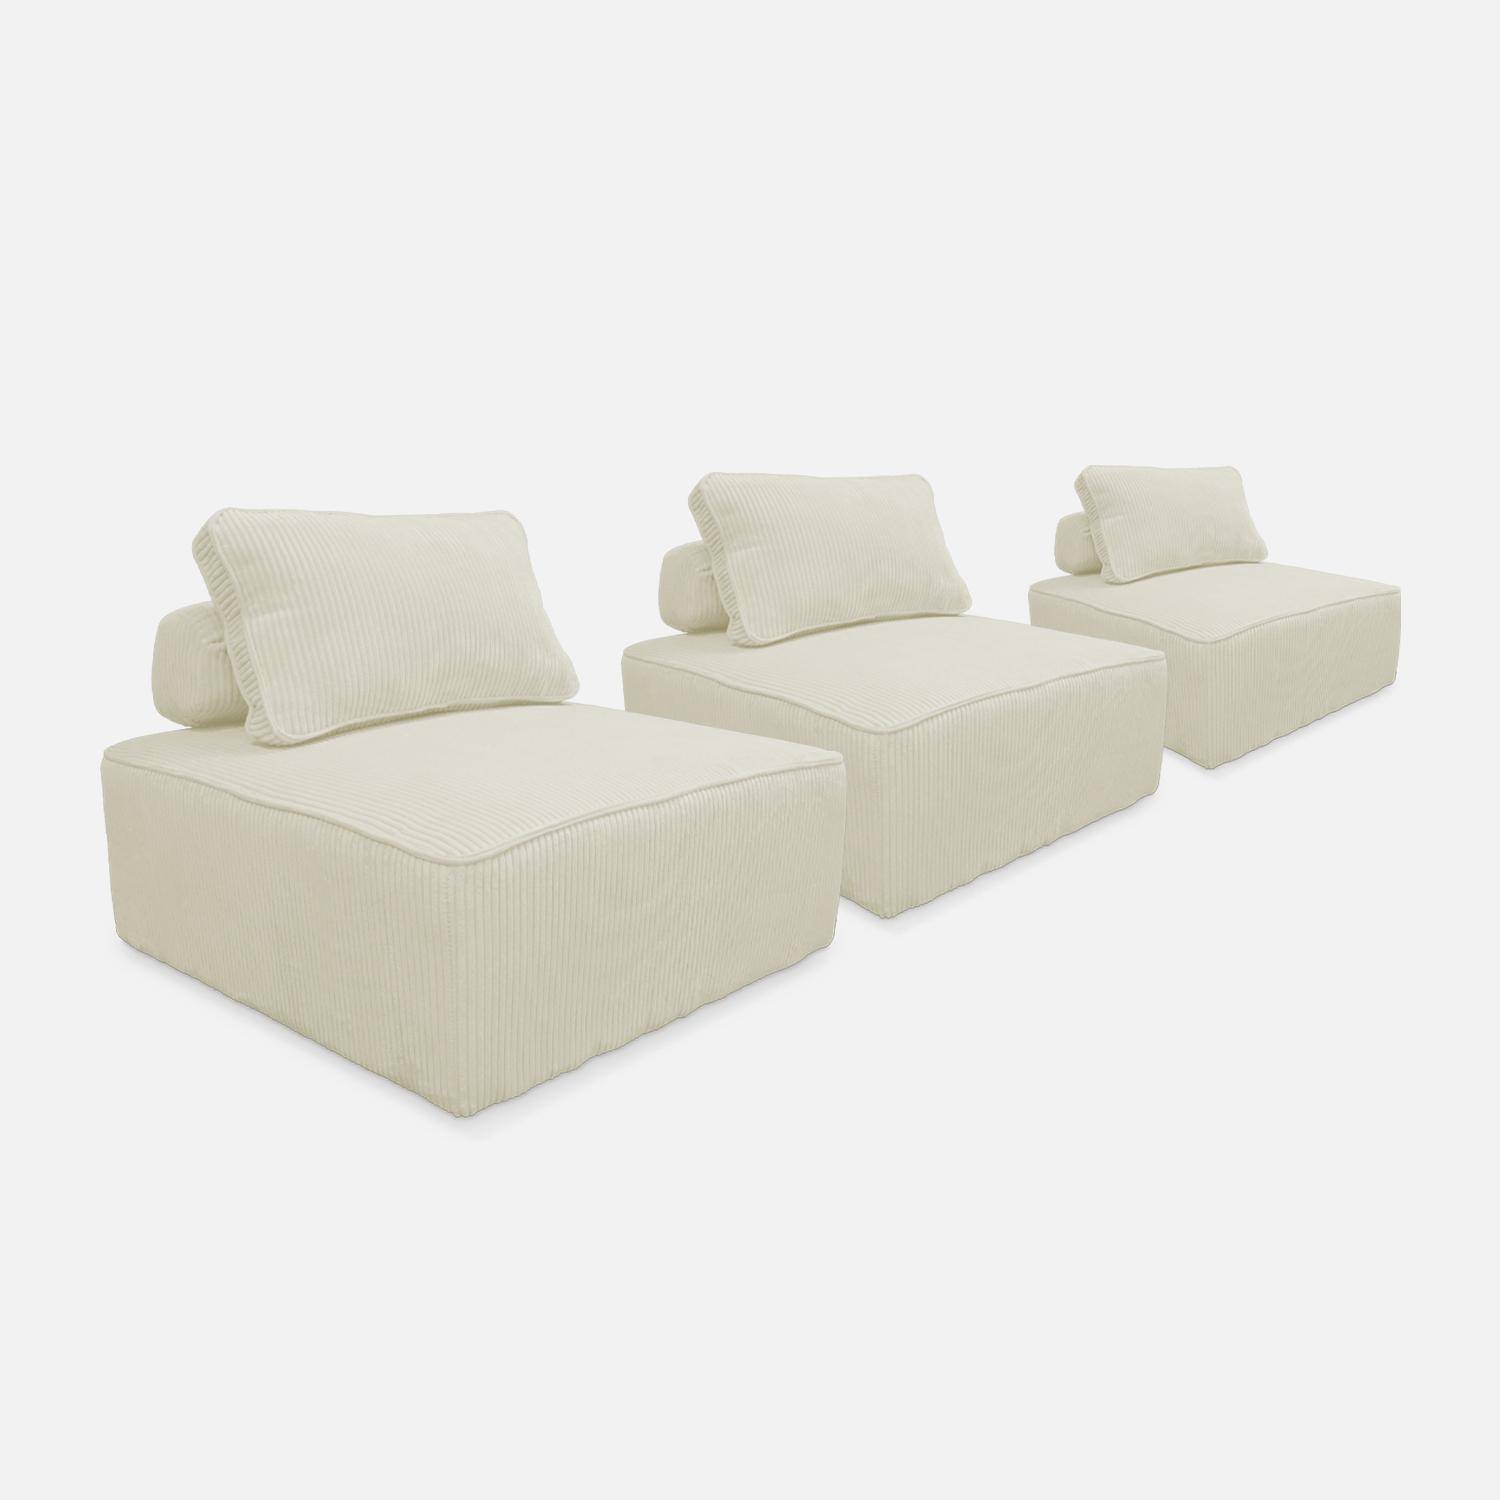 Set van 3 modulaire corduroy fauteuils in crème met kussen Photo5